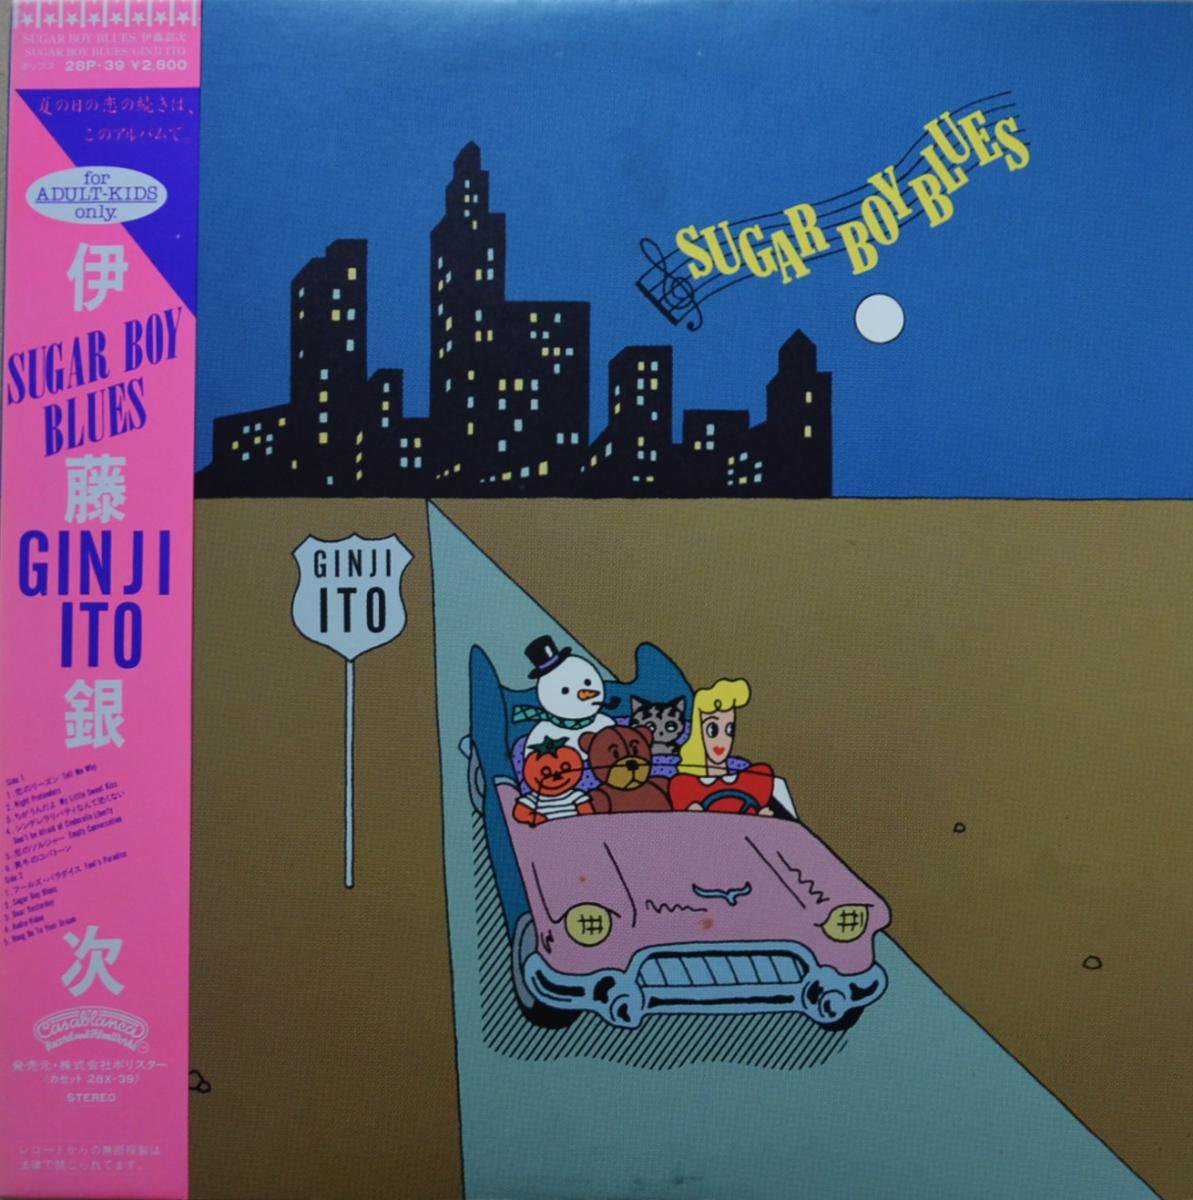 伊藤銀次 GINJI ITO / SUGAR BOY BLUES (LP) - HIP TANK RECORDS